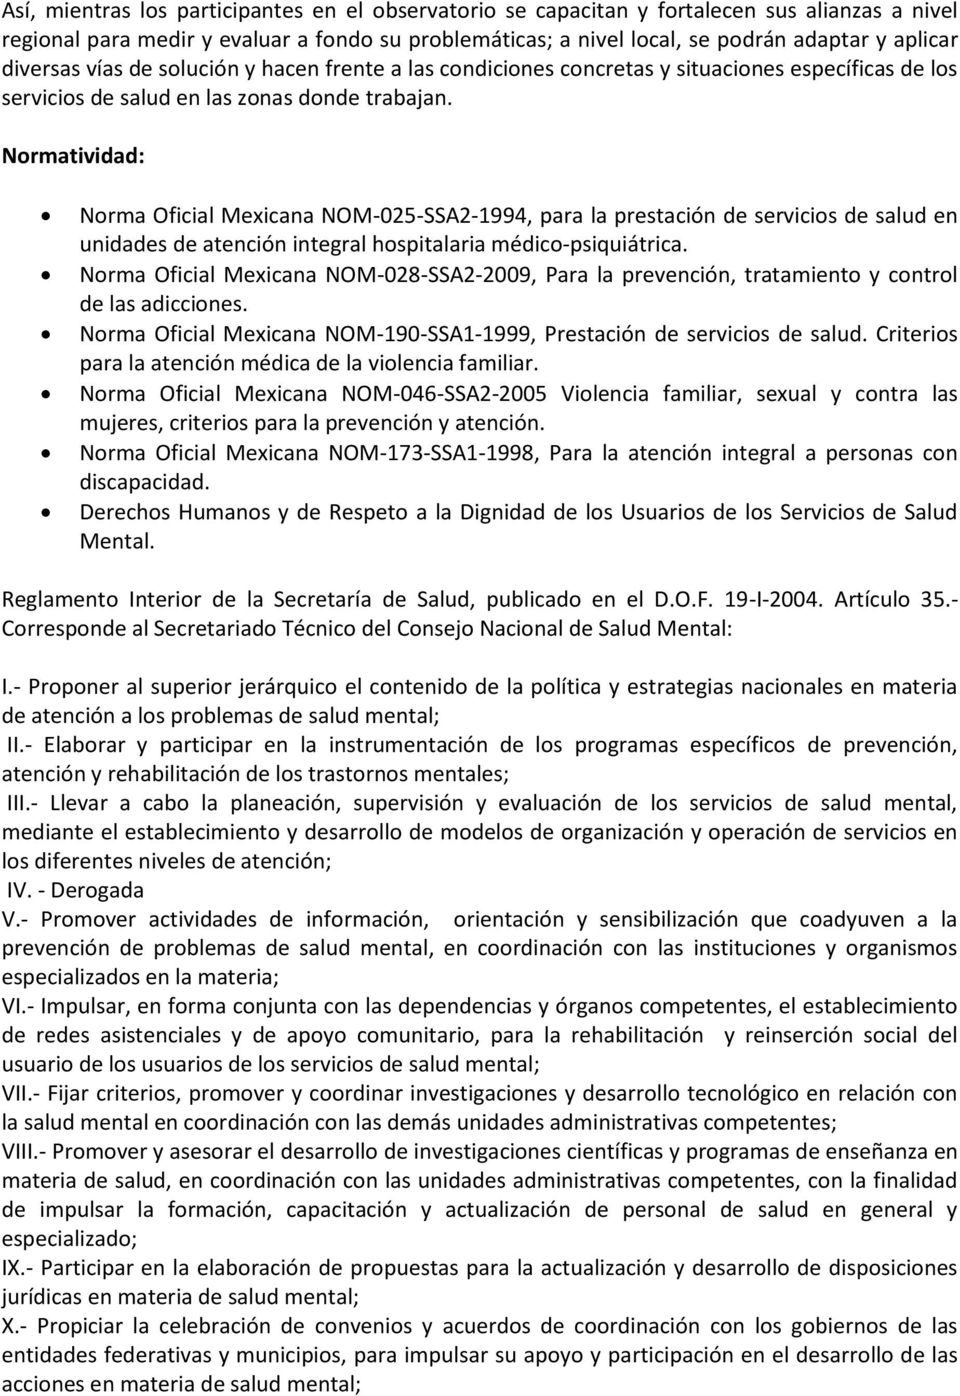 Normatividad: Norma Oficial Mexicana NOM-025-SSA2-1994, para la prestación de servicios de salud en unidades de atención integral hospitalaria médico-psiquiátrica.